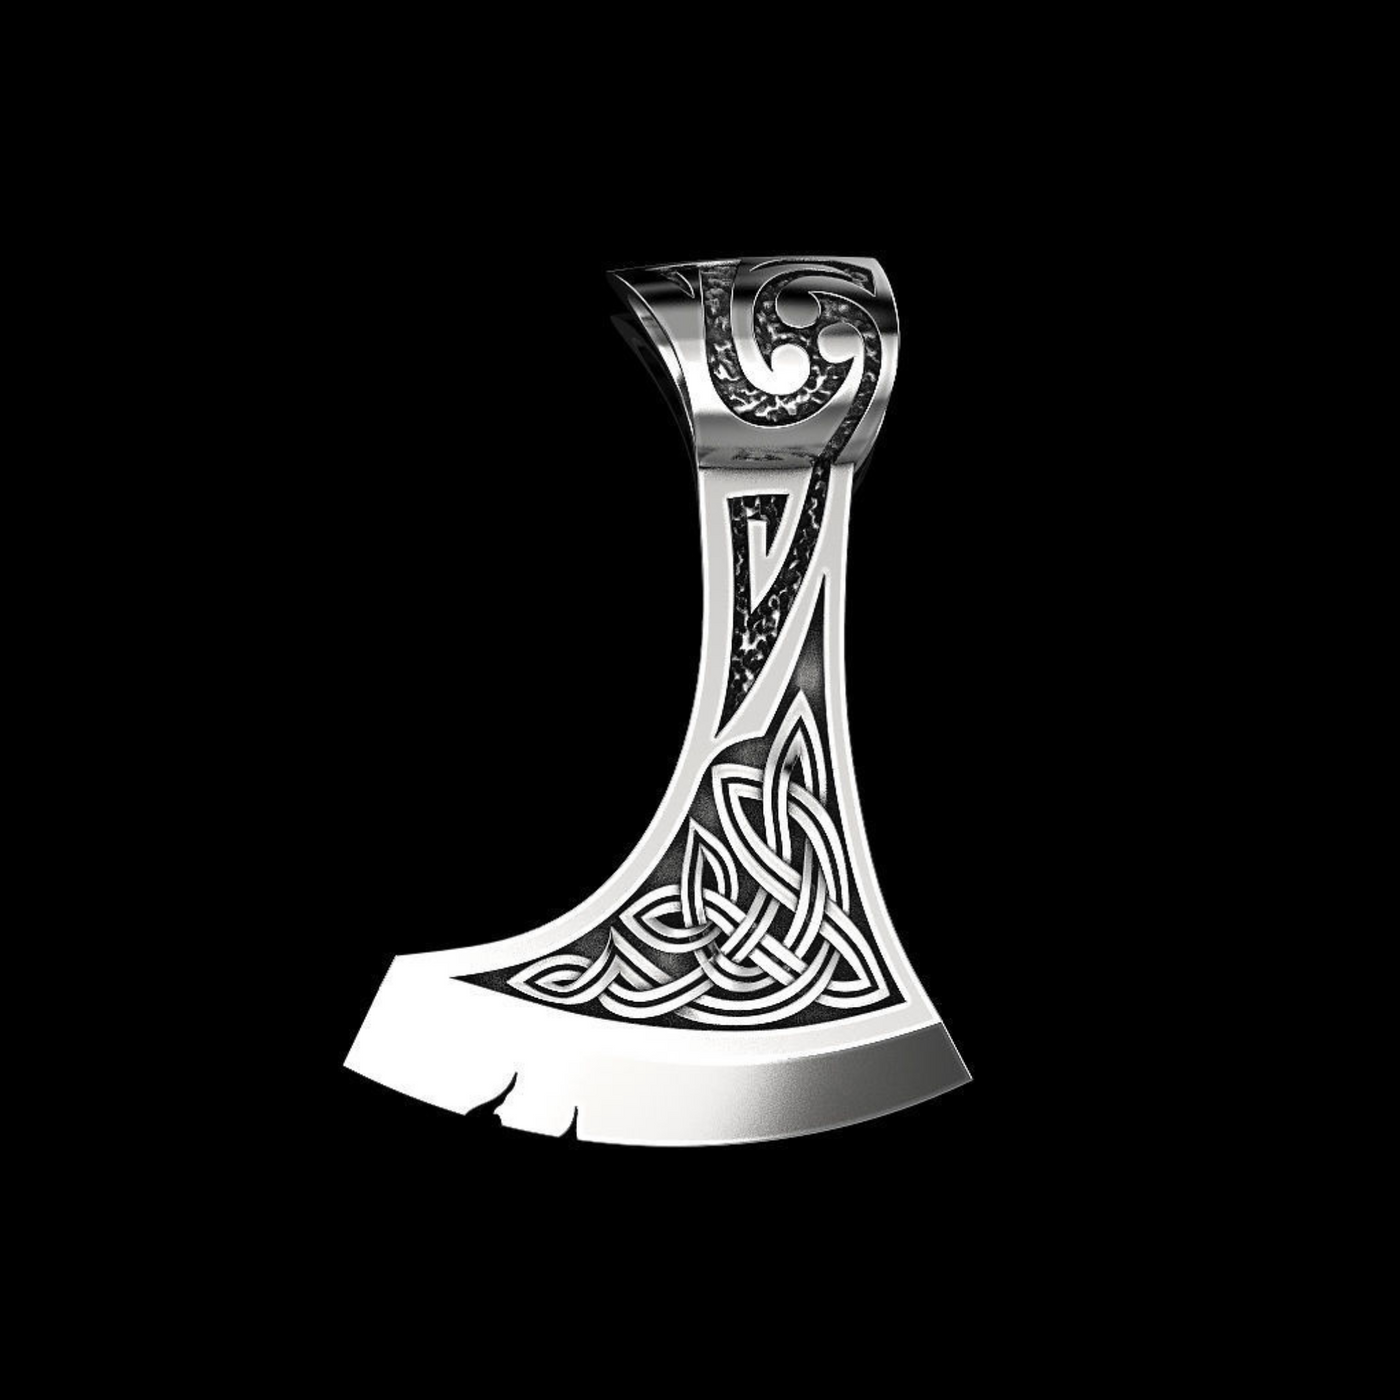 Silver Celtic axe